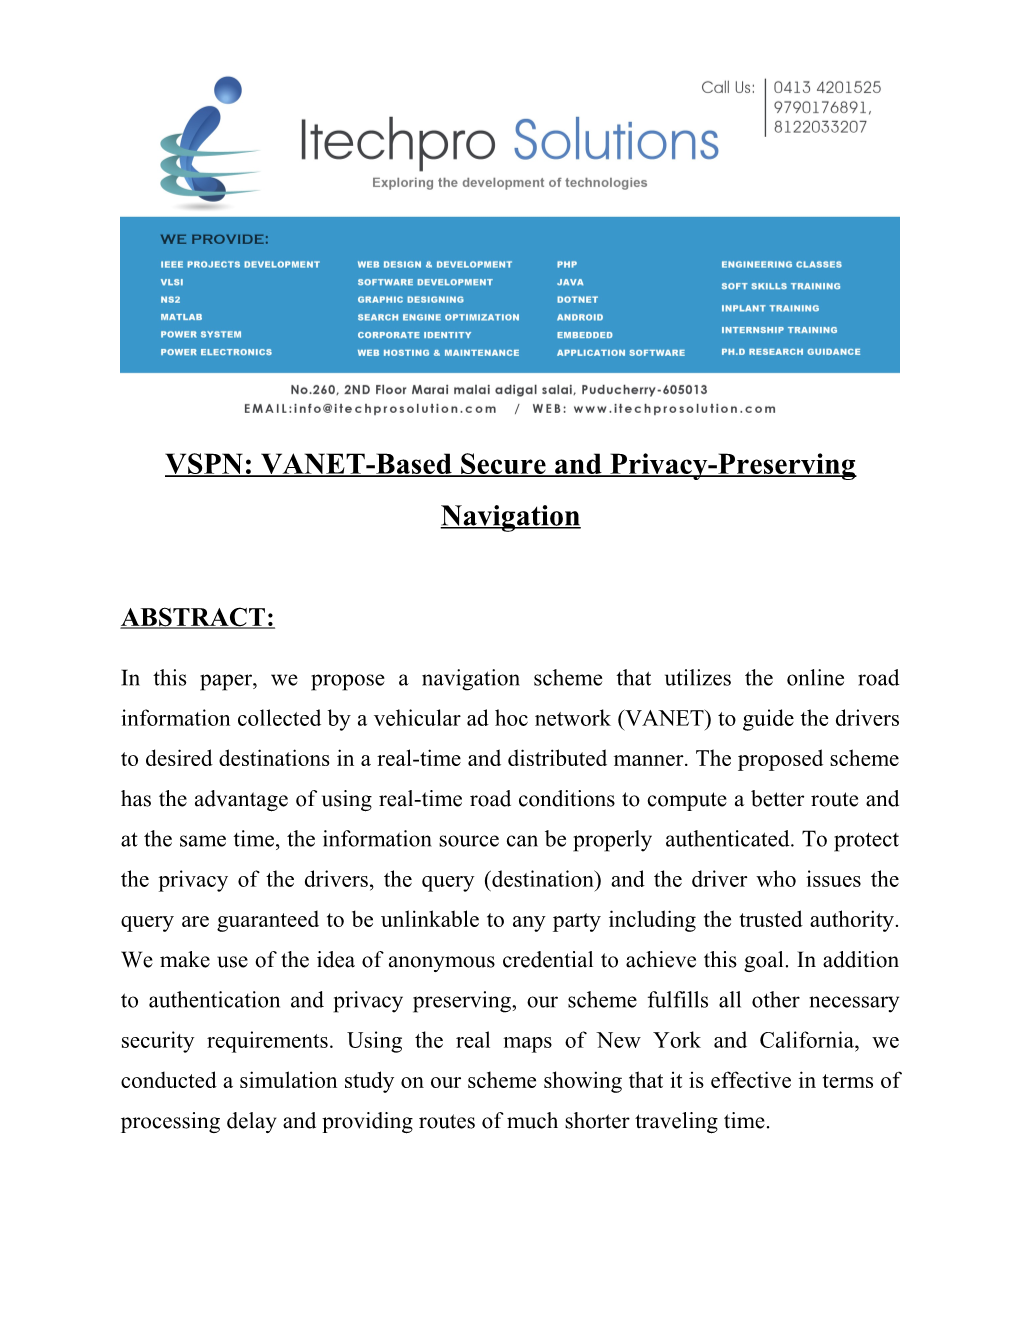 VSPN: VANET-Based Secure and Privacy-Preserving Navigation